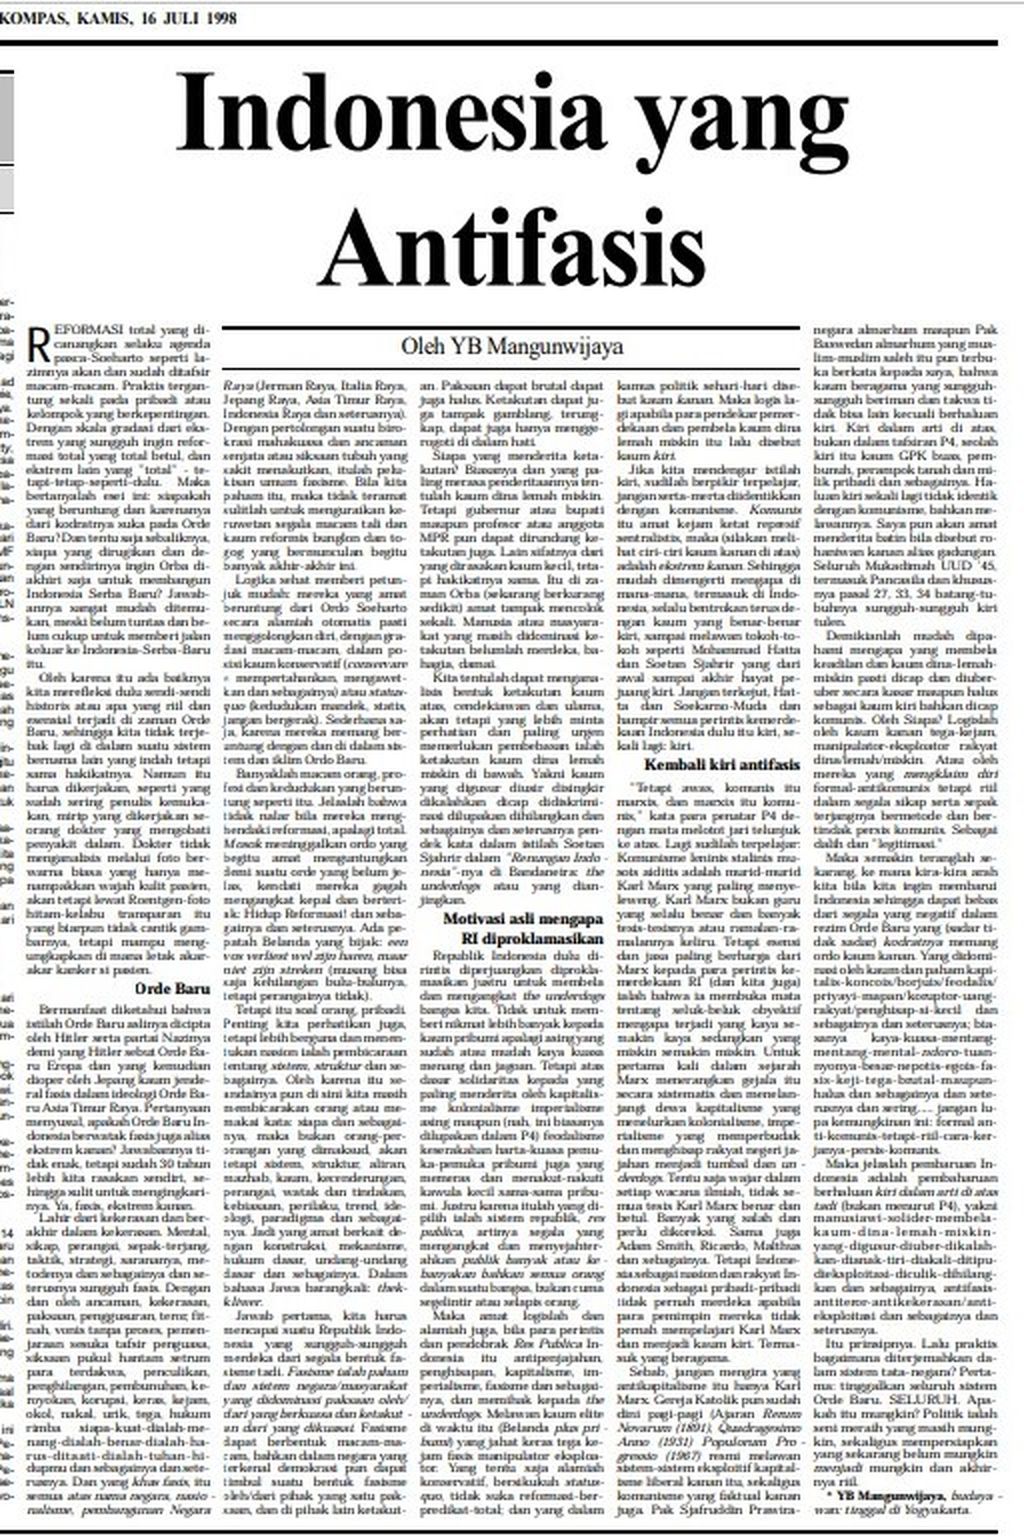 Arsip artikel YB Mangunwijaya, "Indonesia yang Antifasis" (Kompas, 16/7/1998) 